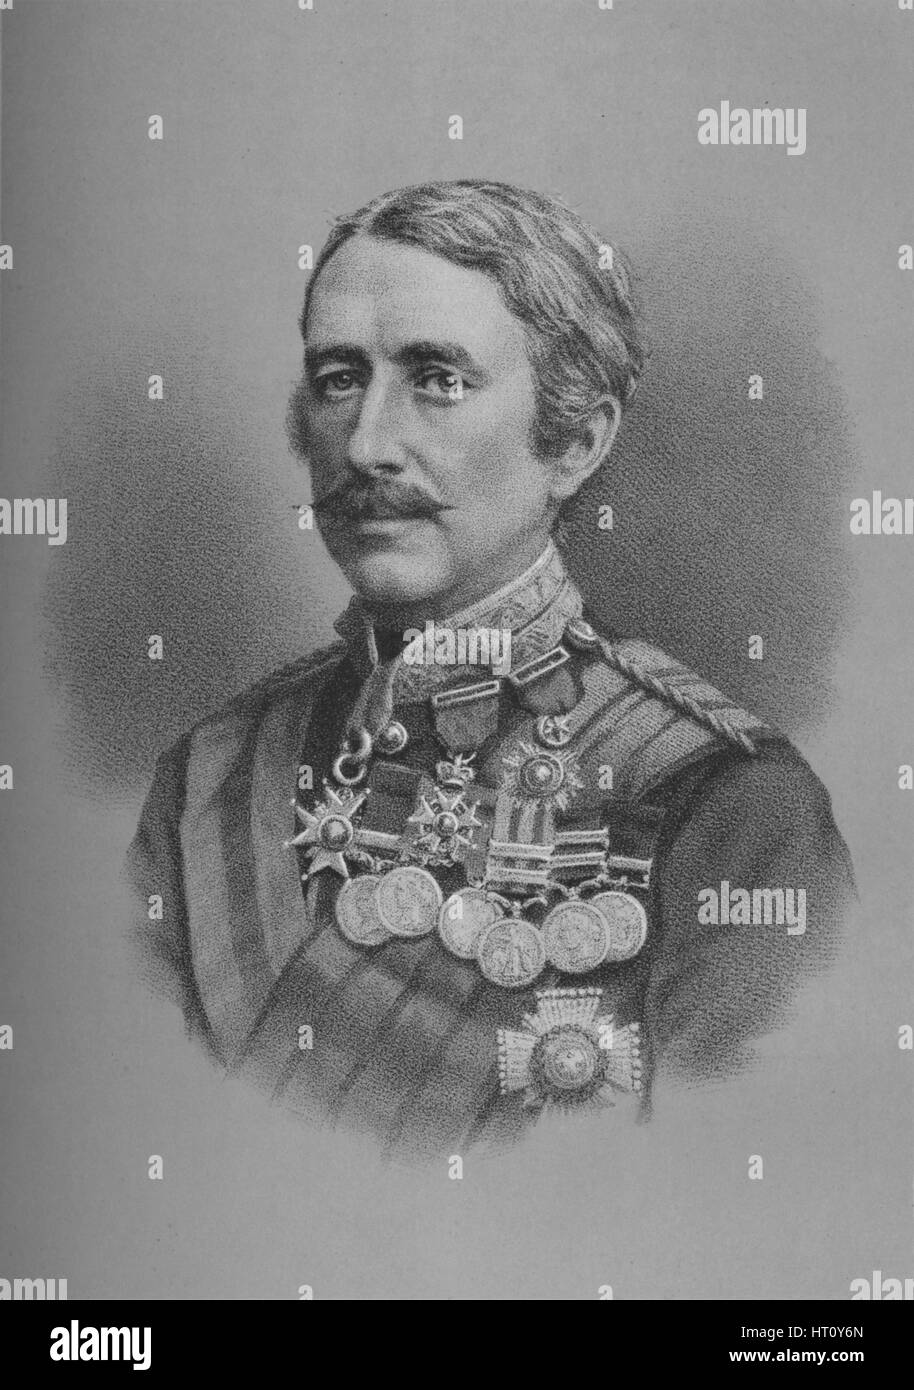 Lieutenant-General Sir Garnet Joseph Wolseley, British soldier, 1882 (1883). Artist: Unknown. Stock Photo